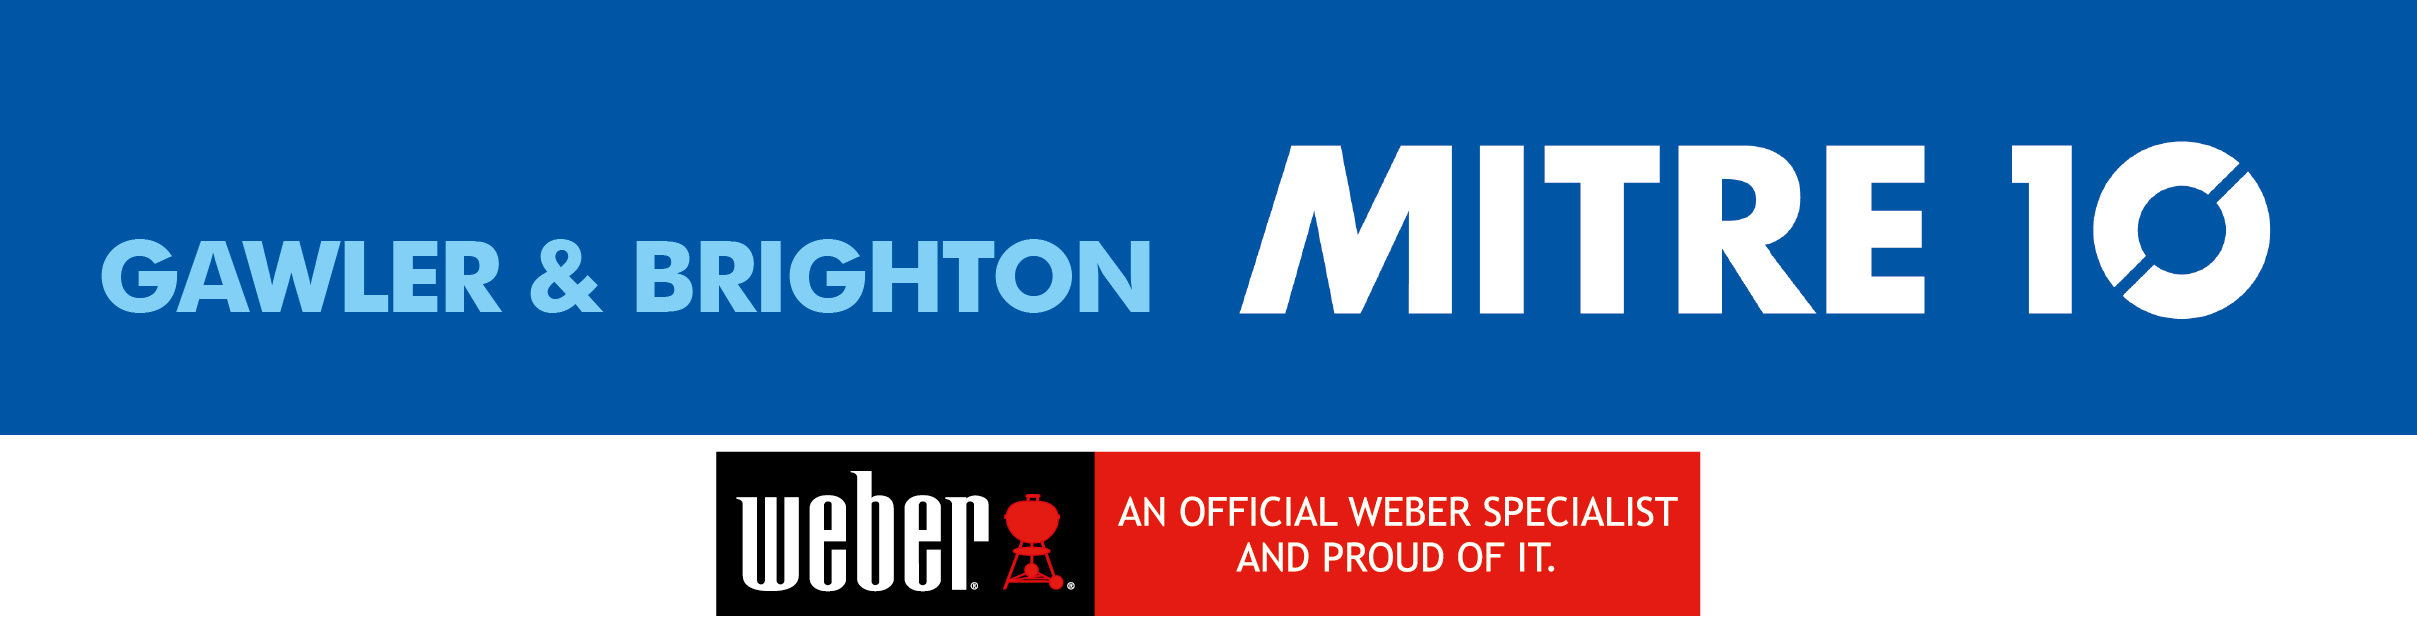 Mitre 10 Gawler & Brighton Logo